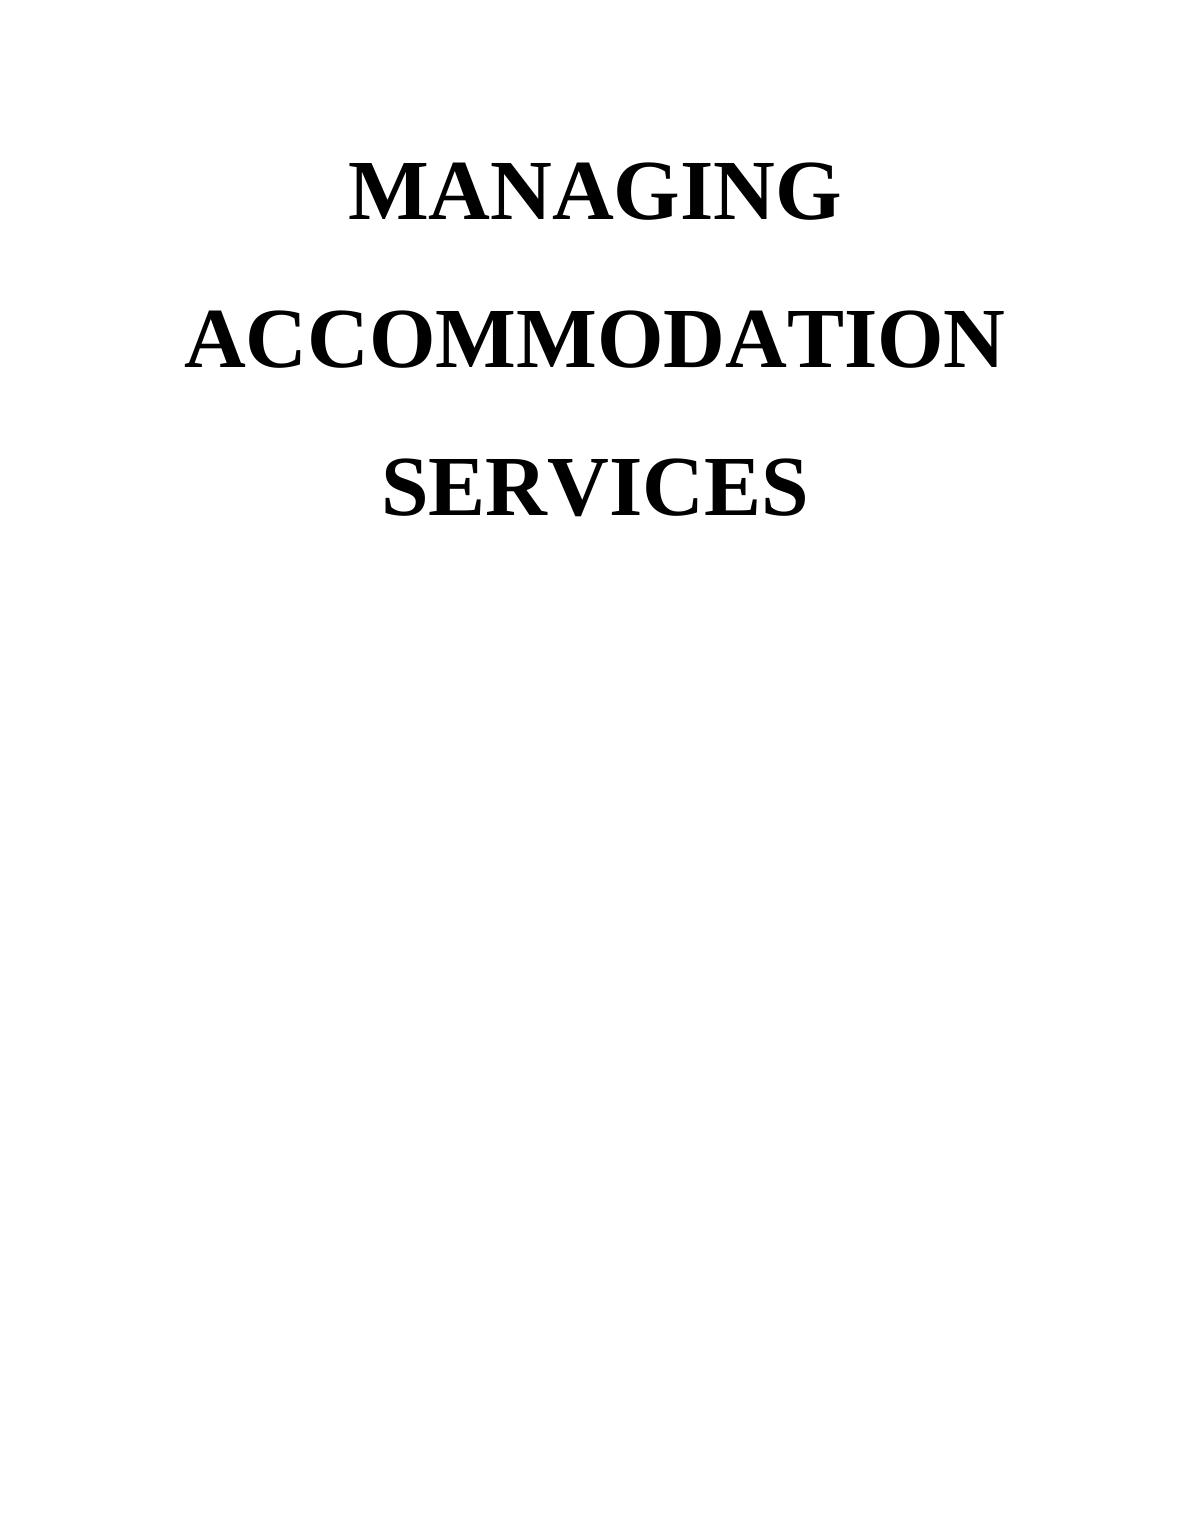 Managing Accommodation Services - UK_1